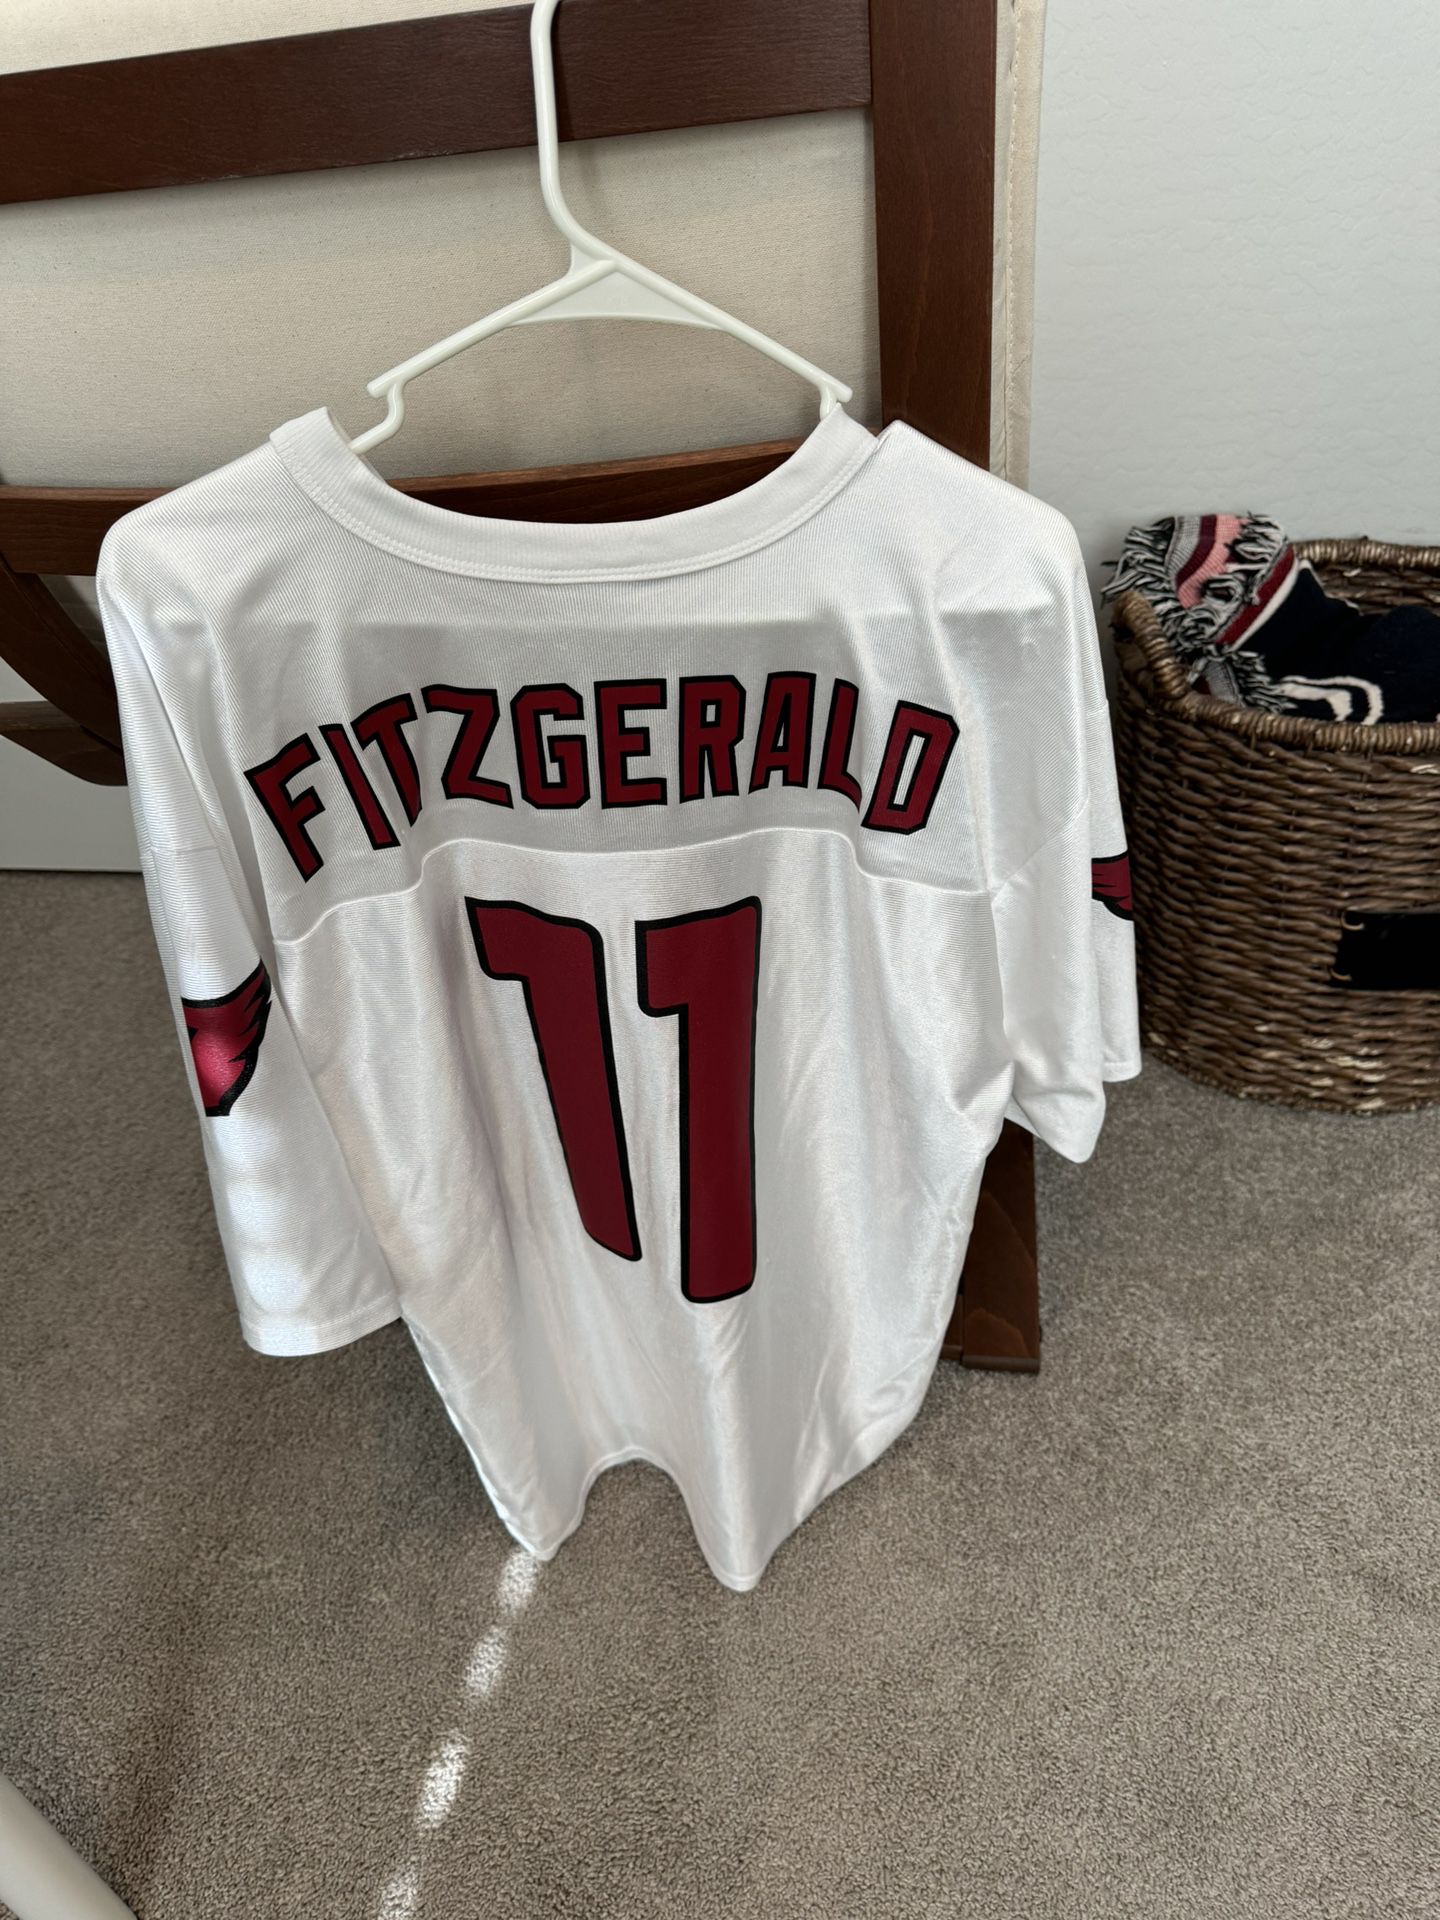 Cardinals - Fitzgerald Jersey